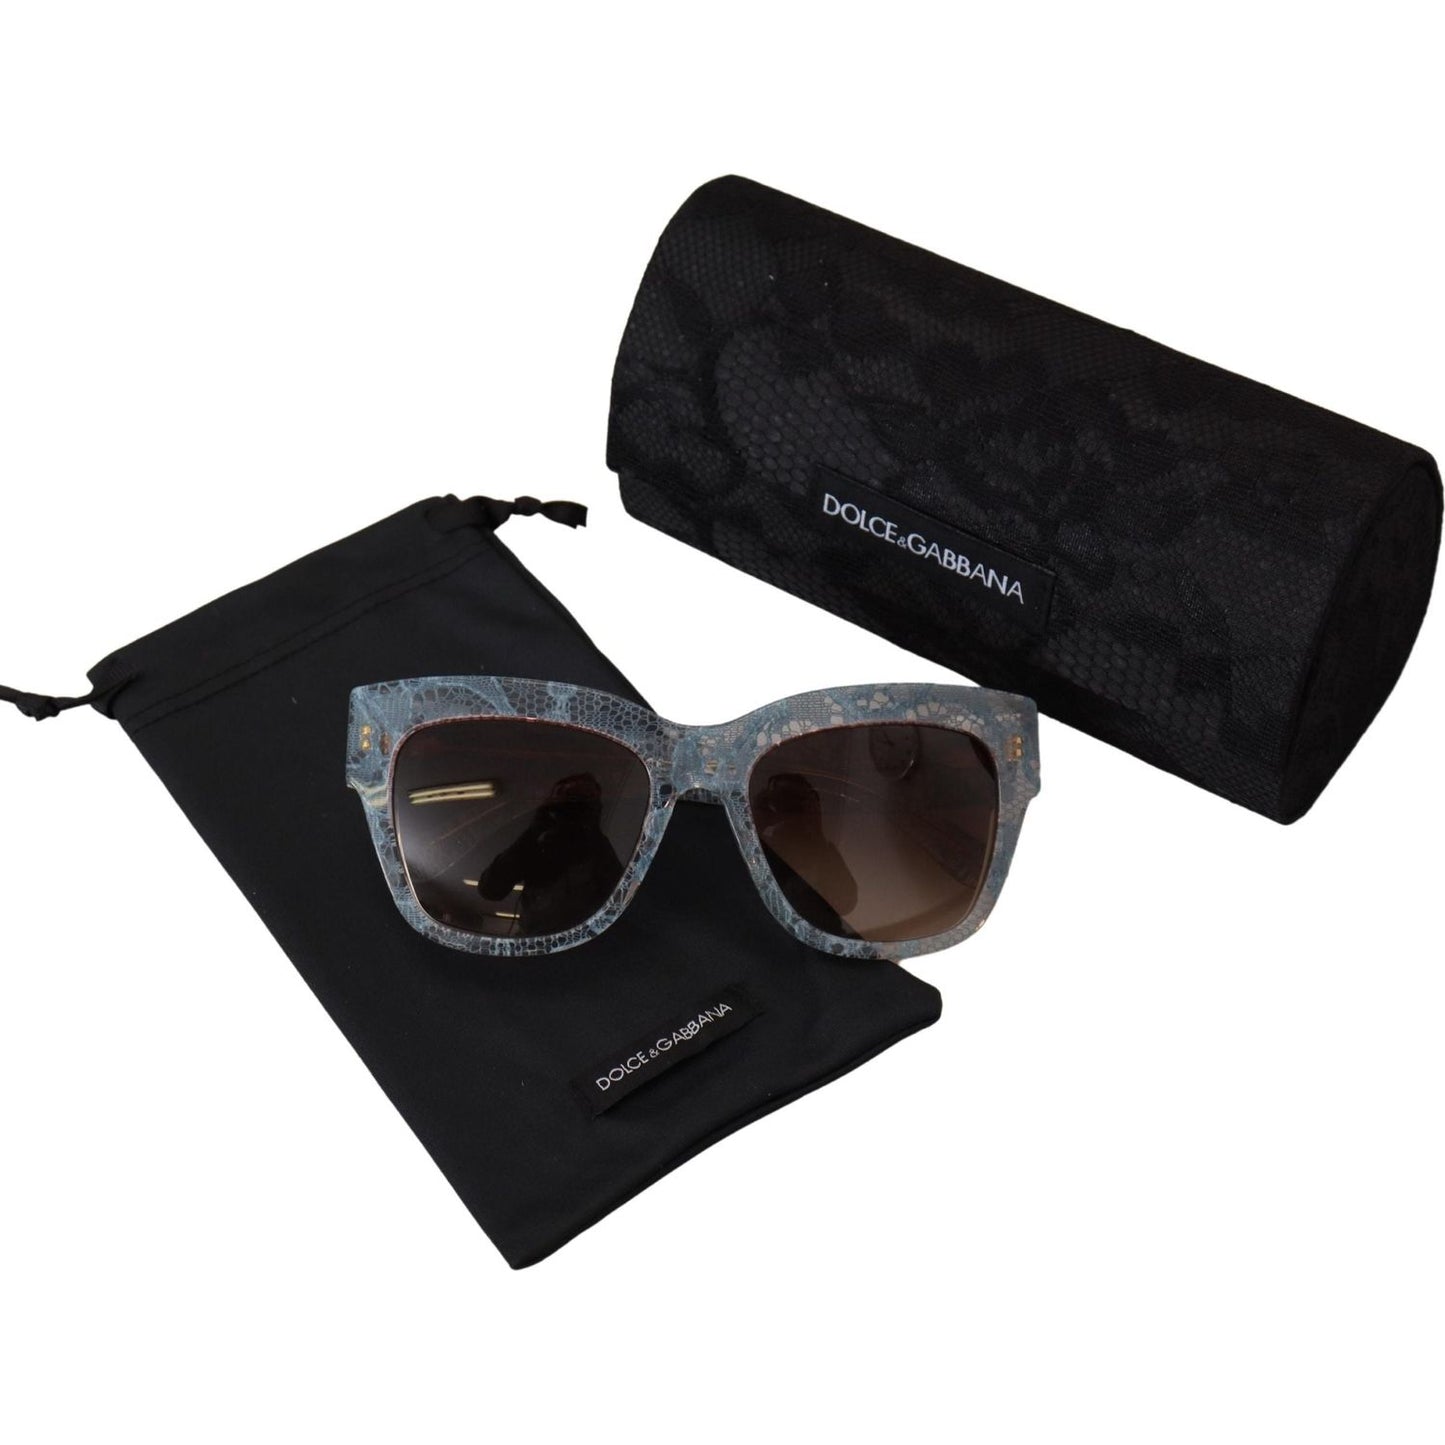 Dolce & Gabbana Elegant Lace-Trimmed Gradient Sunglasses blue-lace-acetate-rectangle-dg4231-shades-sunglasses